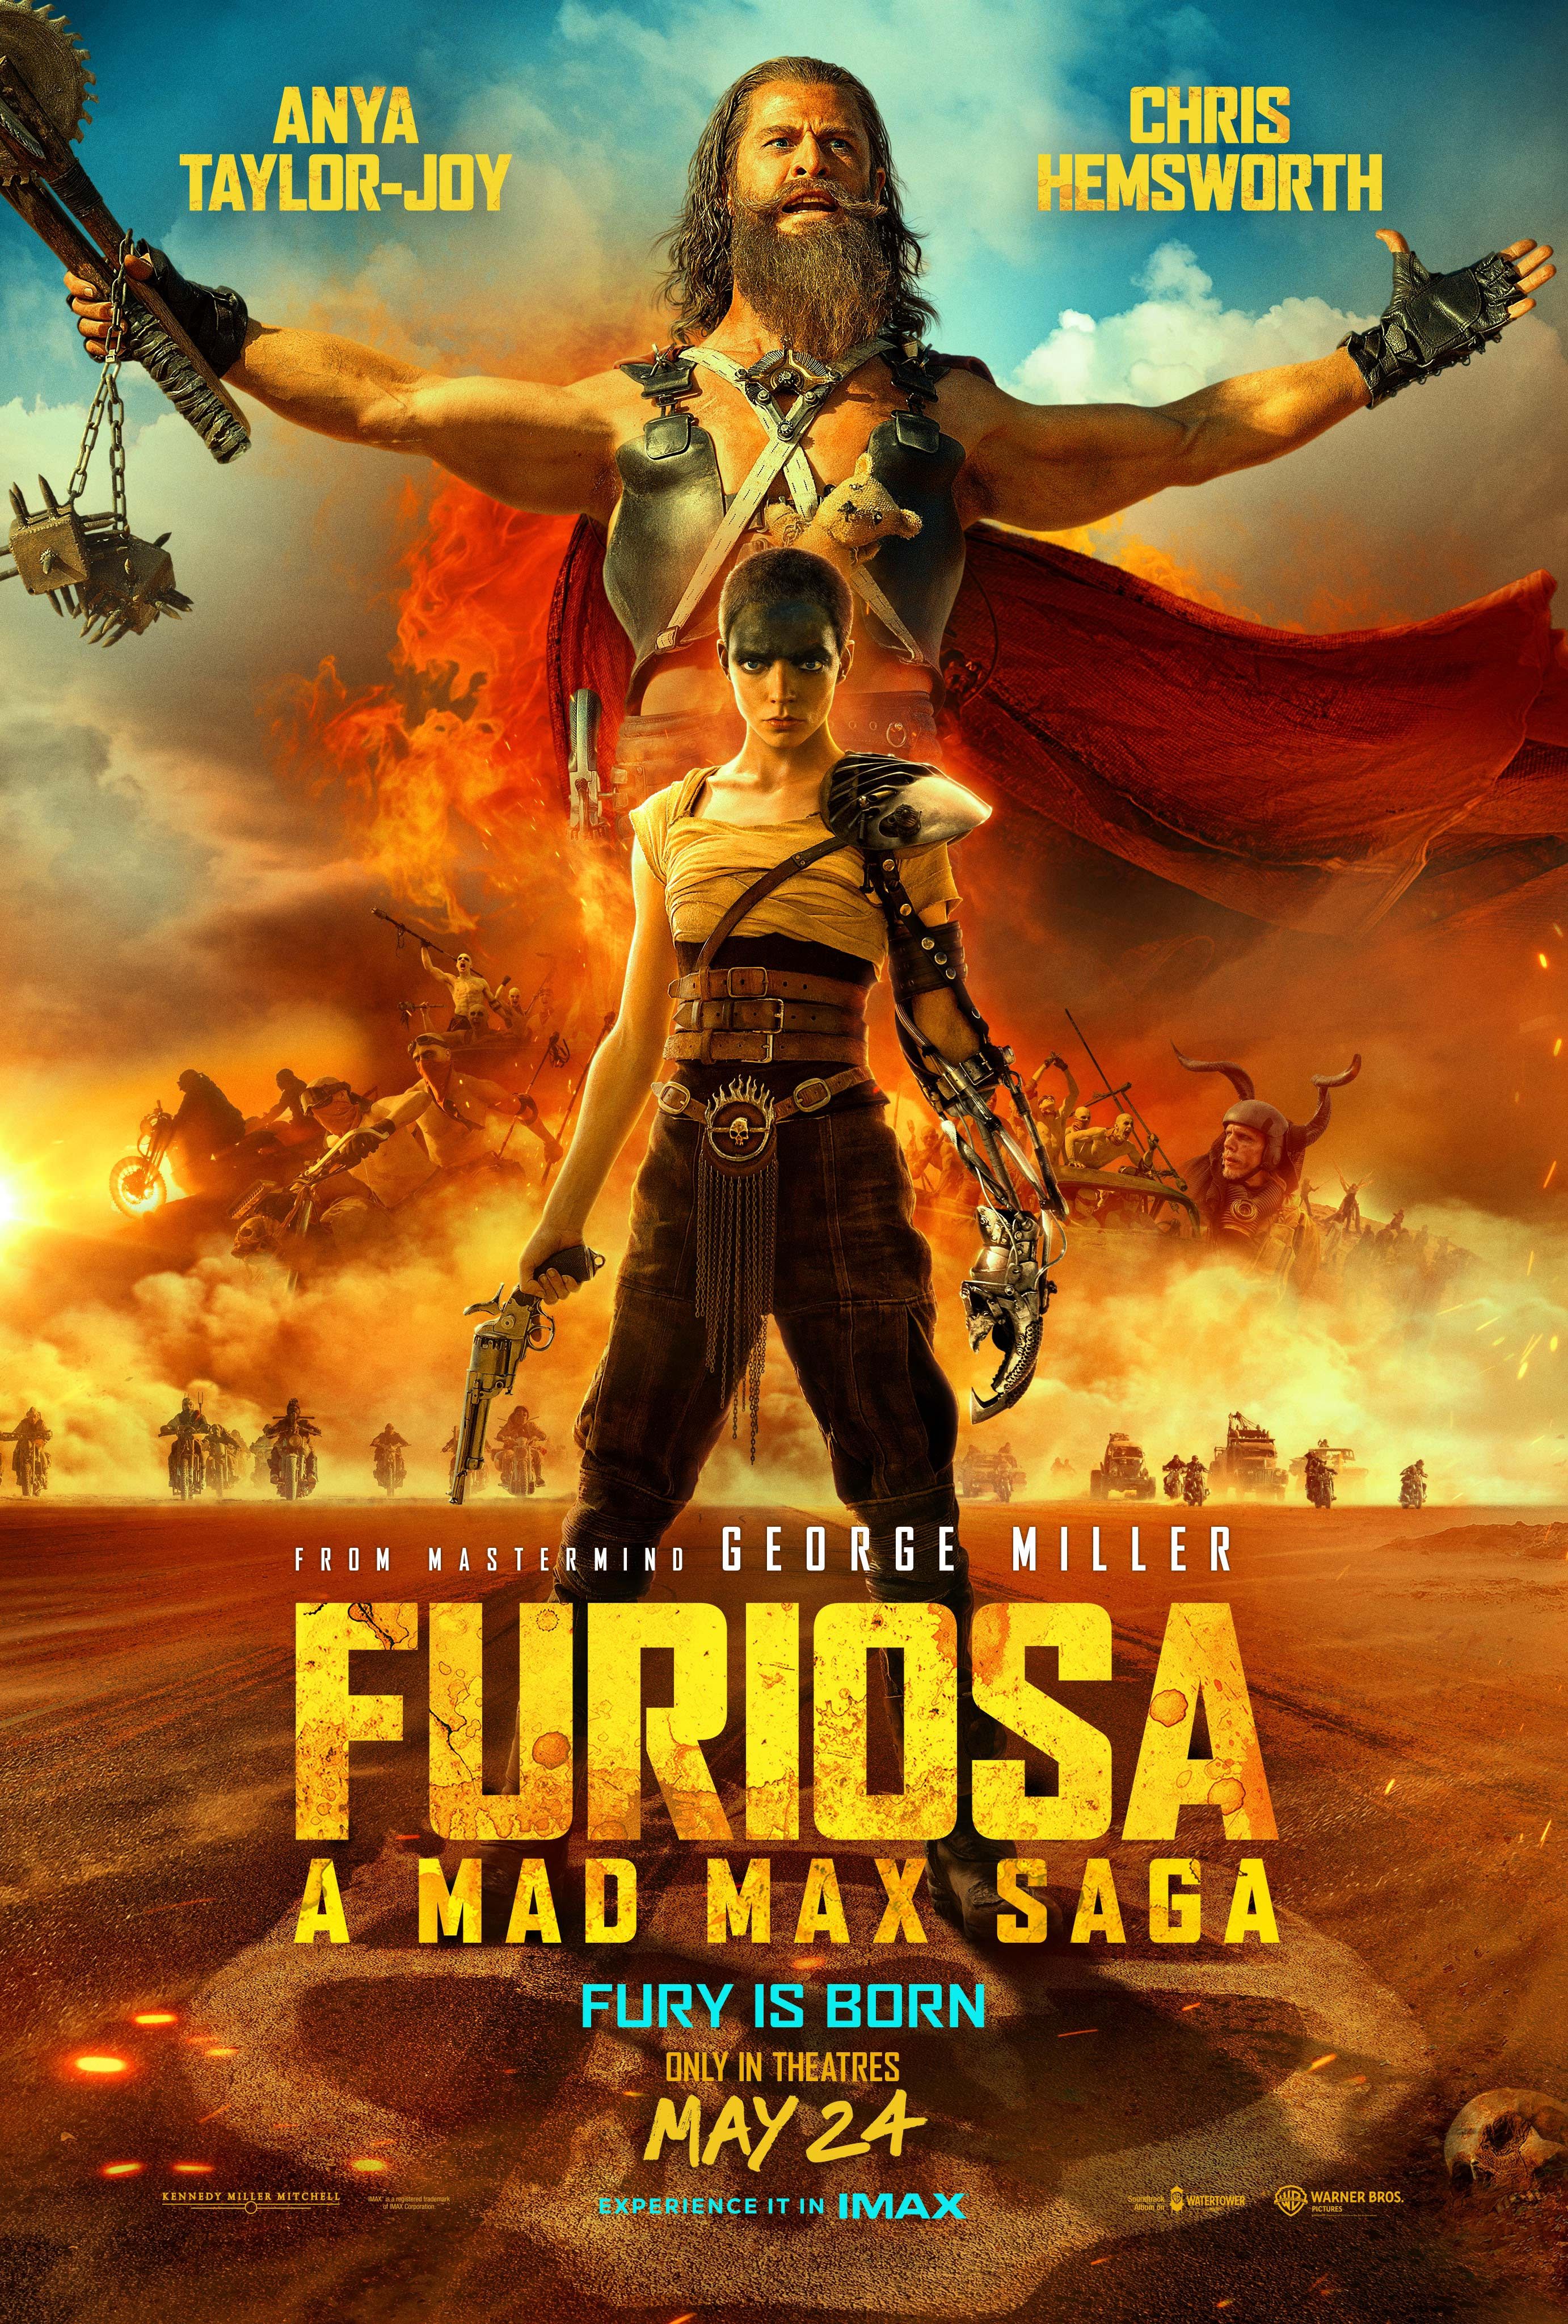 Furiosa Një poster i Mad Max Saga që tregon Anya Taylor Joy si Furiosa dhe Chris Hemsworth duke qëndruar përballë një bande motorësh